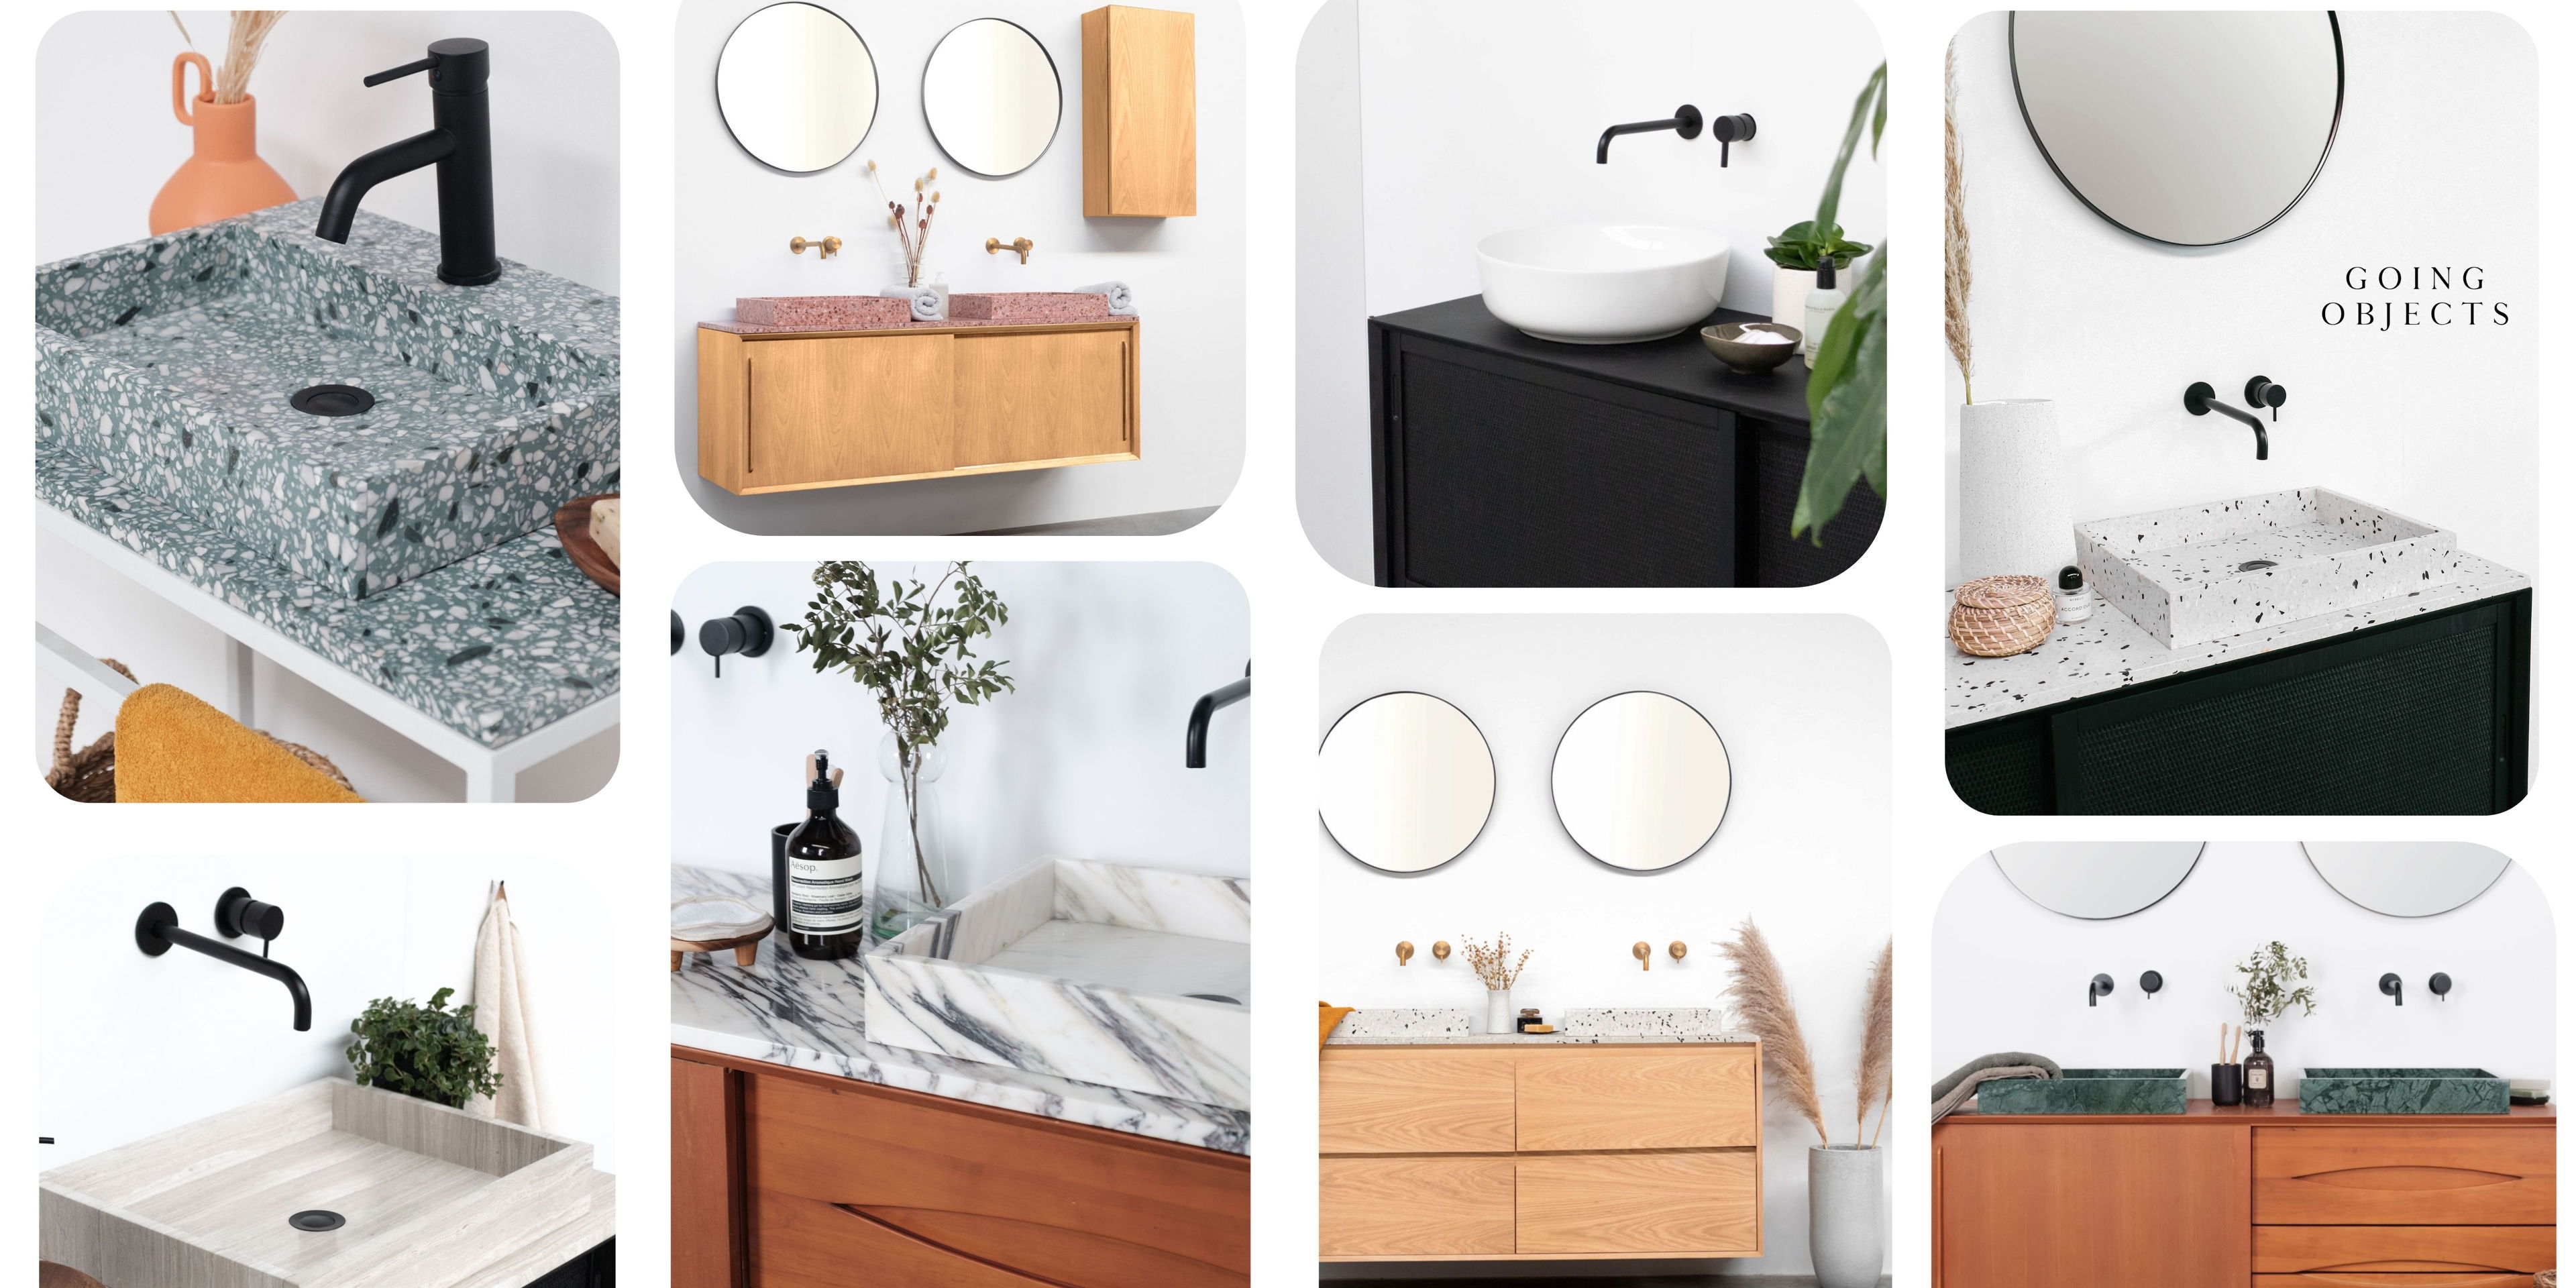 Créez la salle de bain de vos rêves avec la marque belge de design « Going Objects »